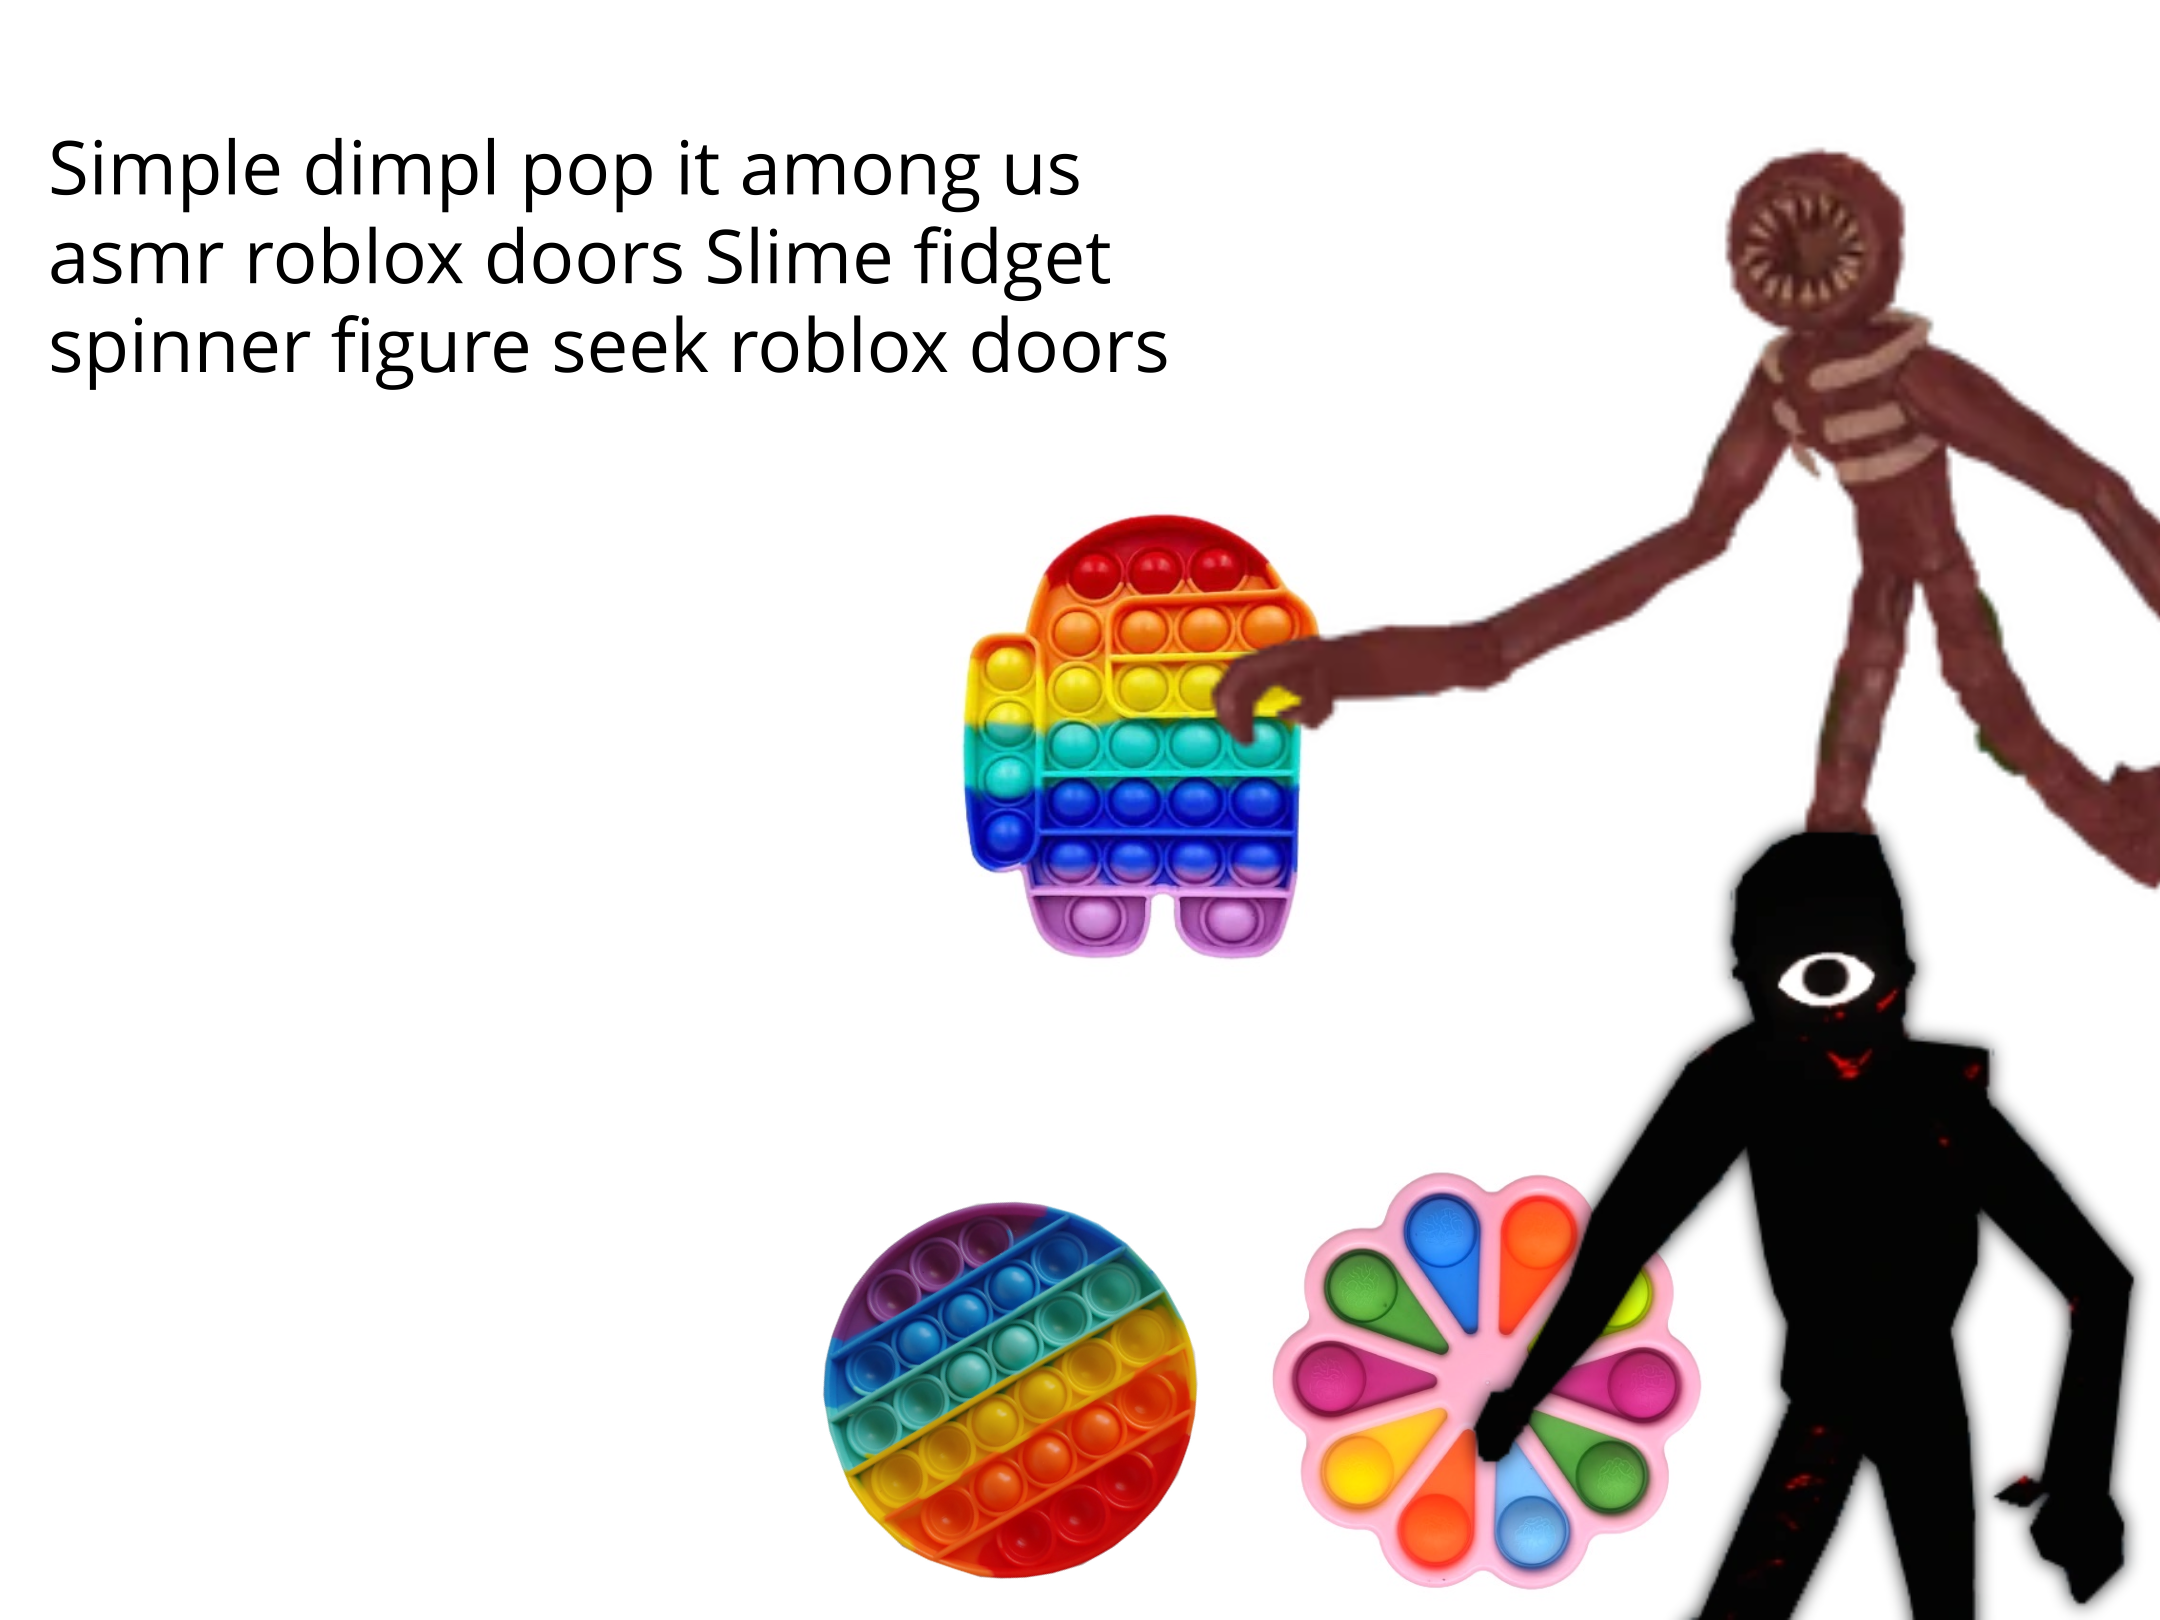 SEEK ROBLOX DOORS